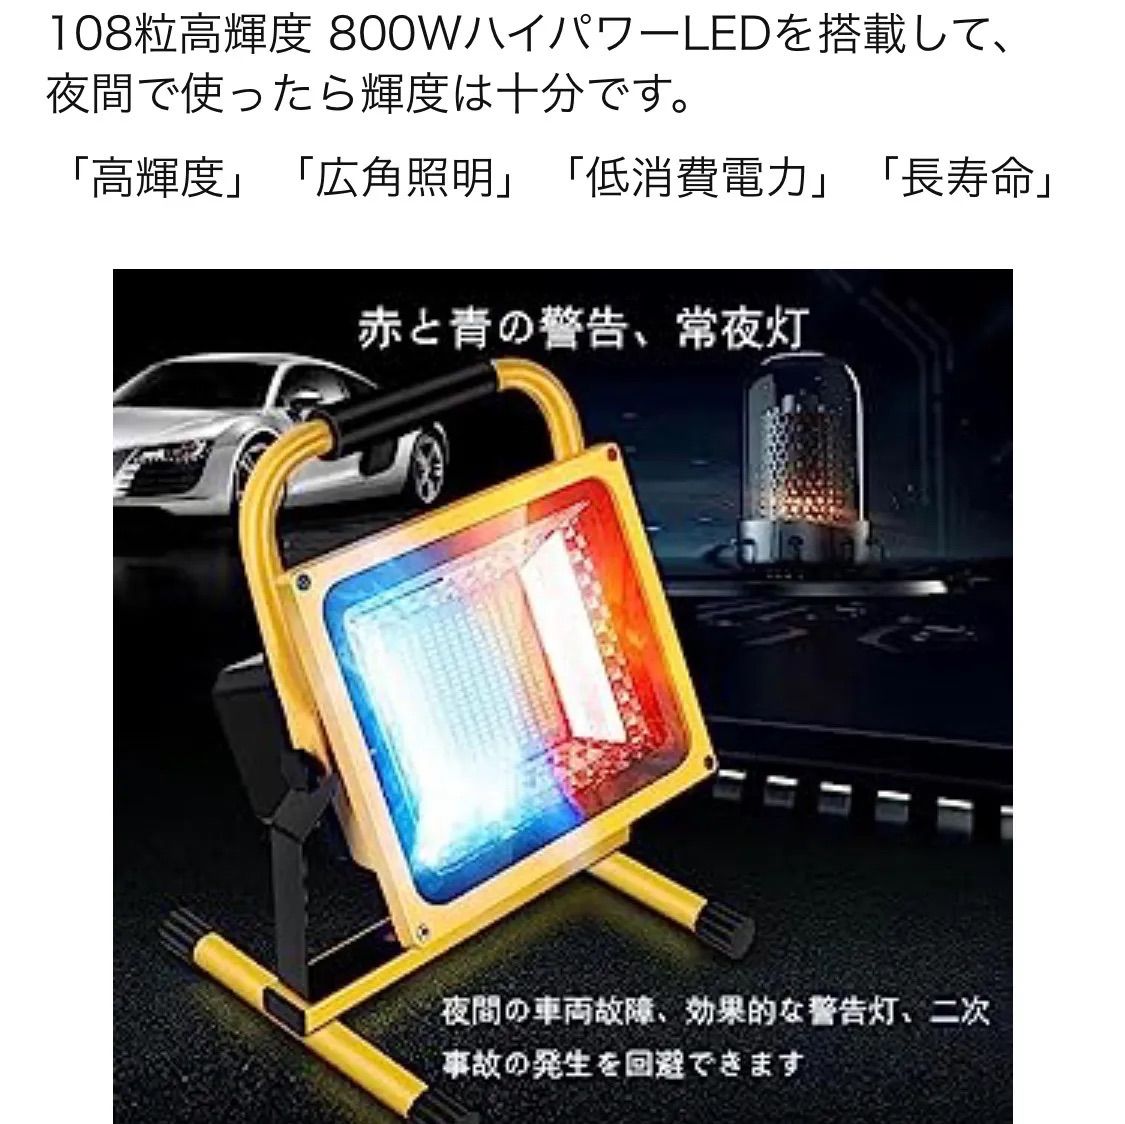 LED投光器 800W 充電式 ポータブル投光器 作業灯 ABS素材